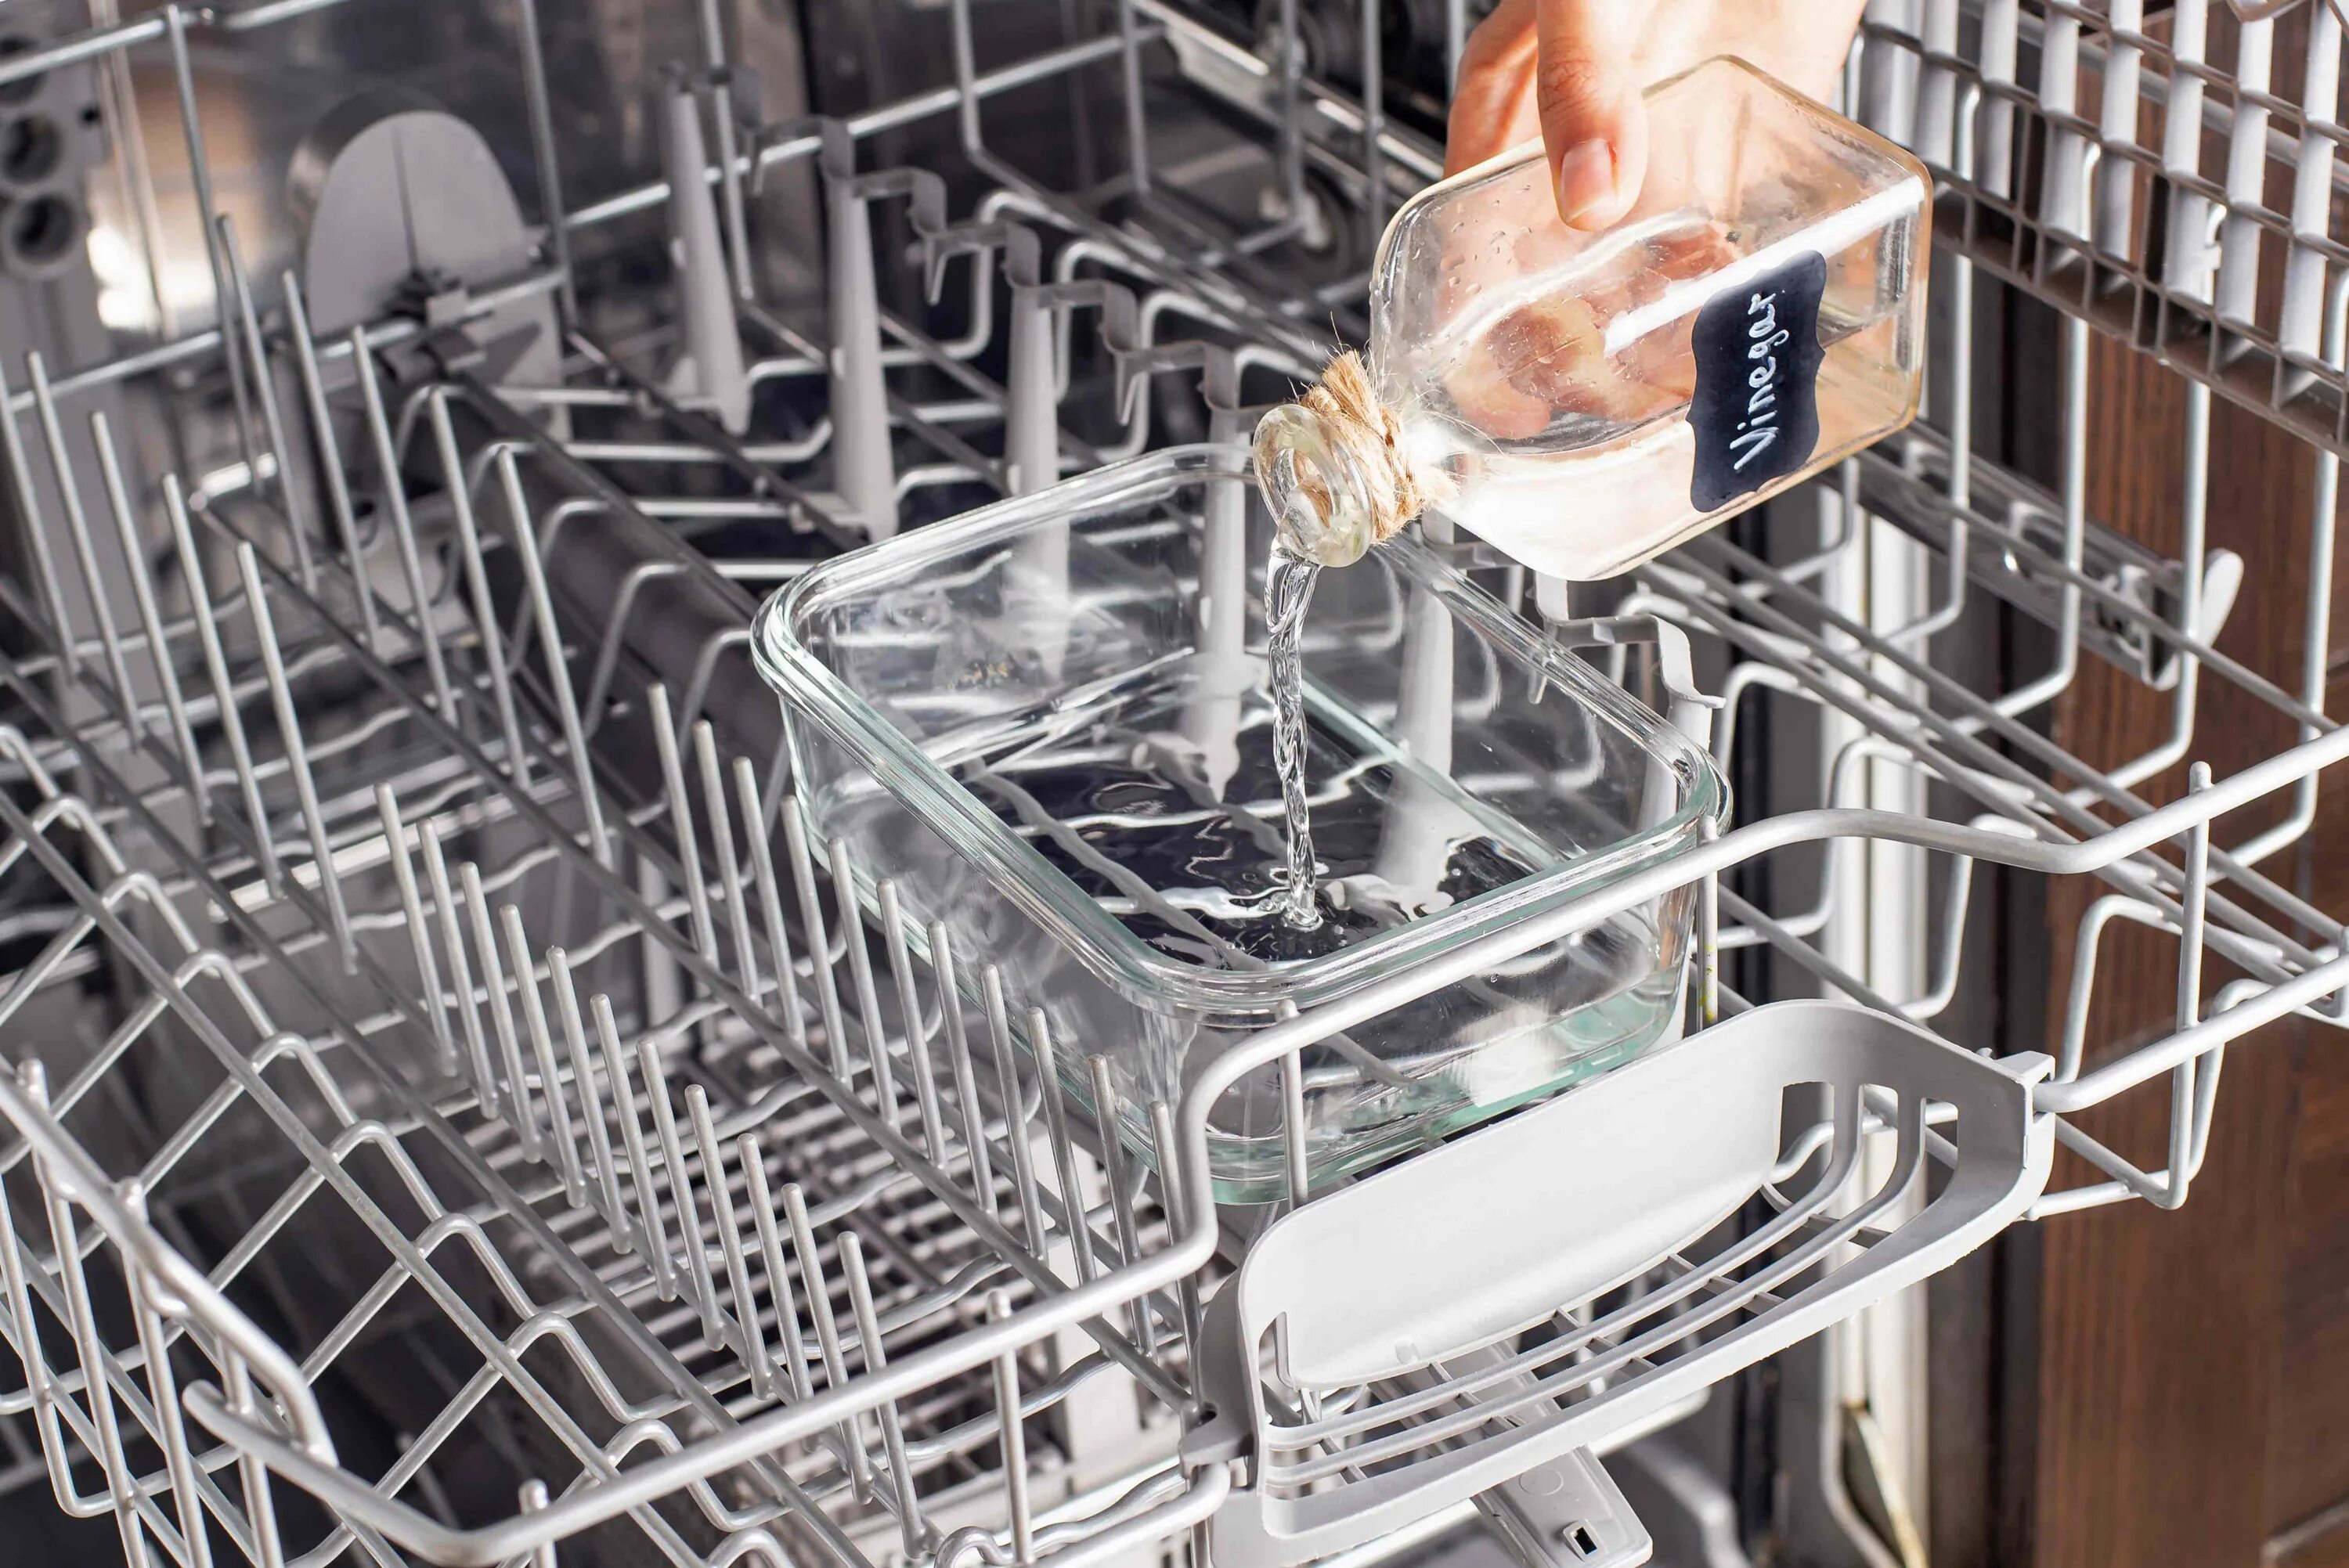 Фильтр для посудомоечной машины. Чистка посудомоечной машины. Помыть посудомоечную машину. Посуда в посудомойке.